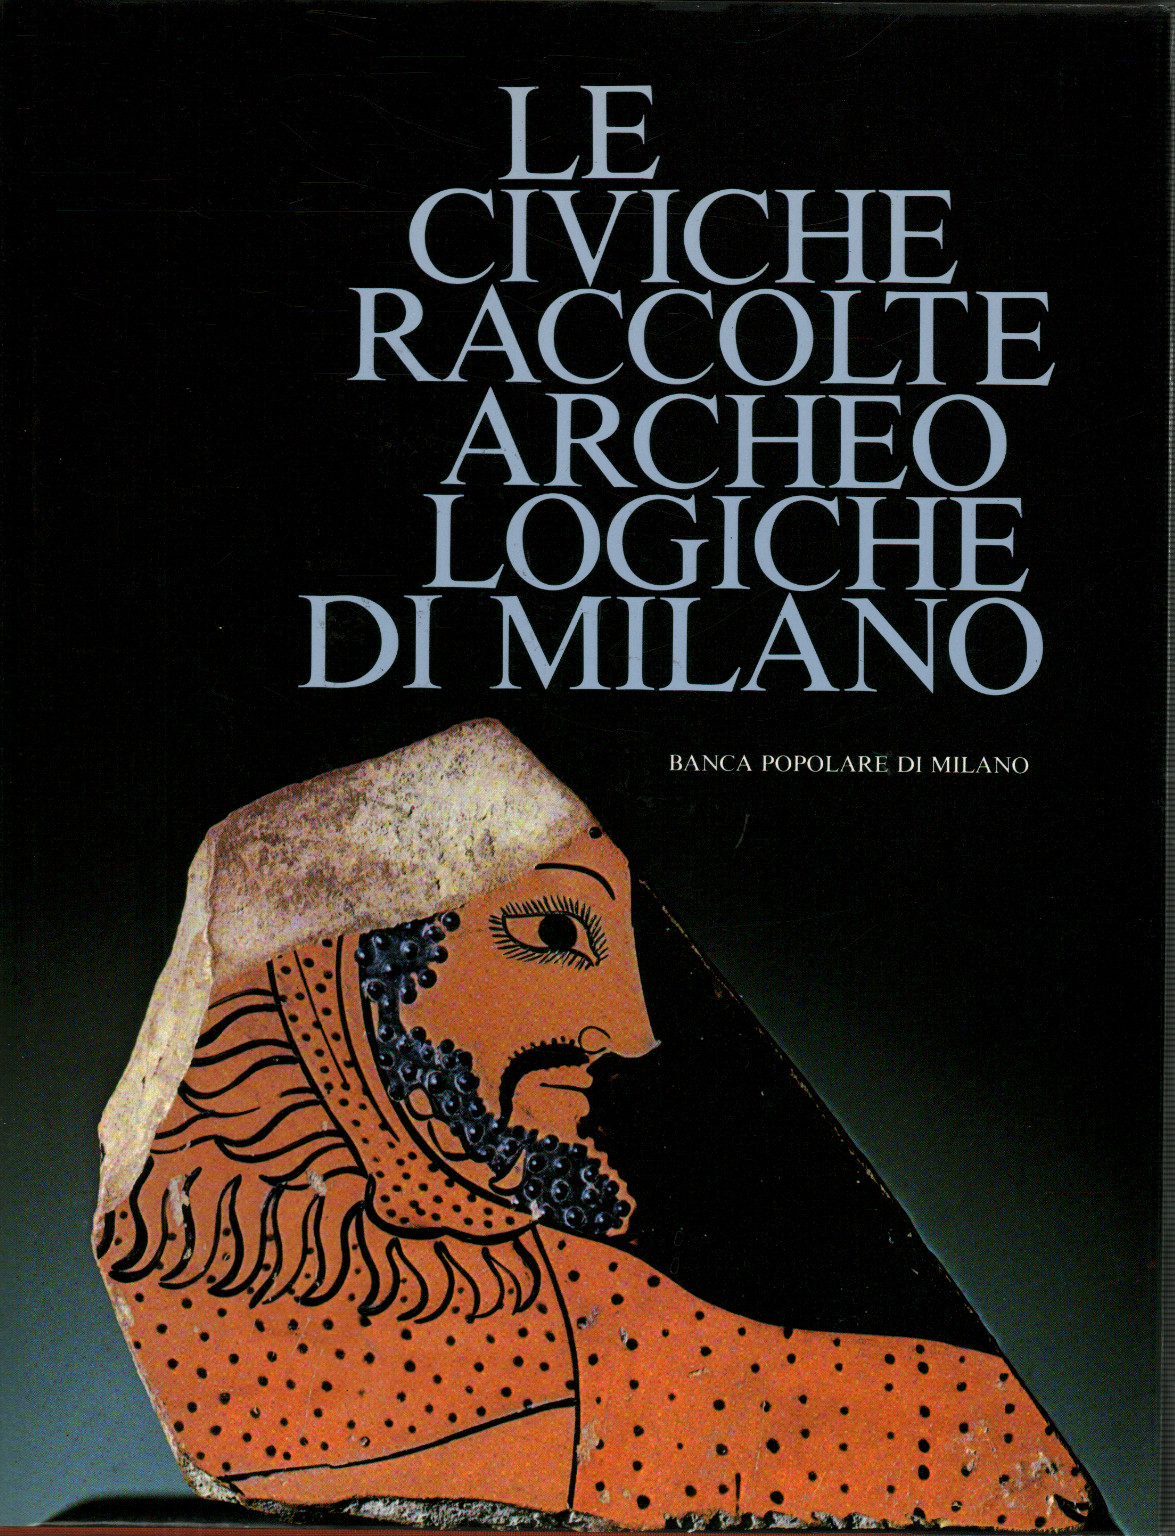 Le civiche raccolte archeologiche di Milano, s.a.